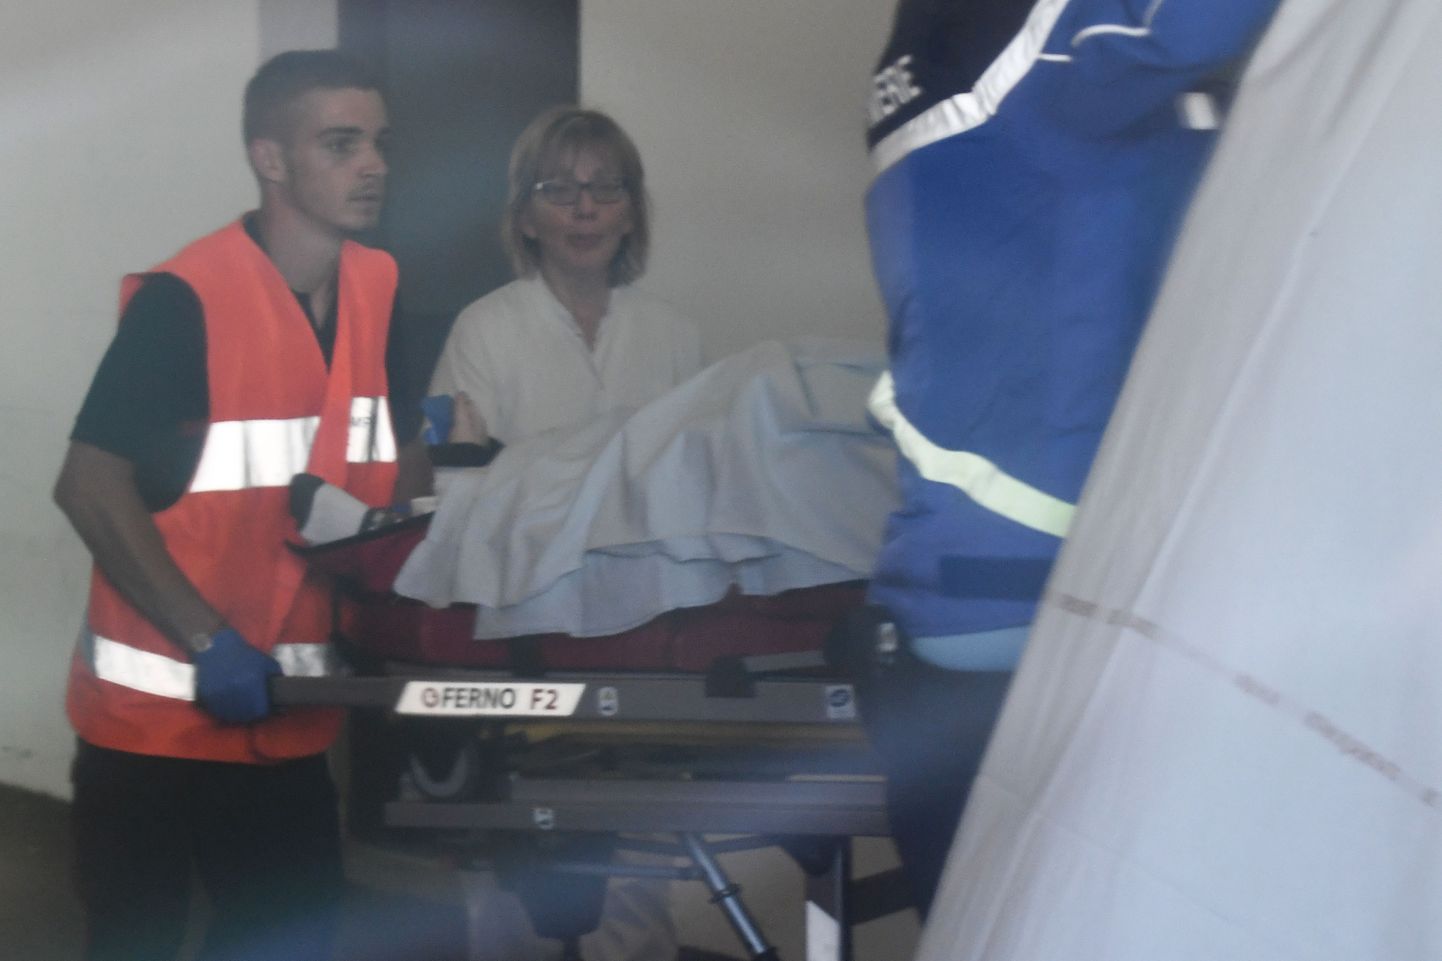 Chris Froome viidi pärast kukkumist helikopteriga haiglasse, kus ta elas üle kaheksa tunni pikkuse operatsiooni.